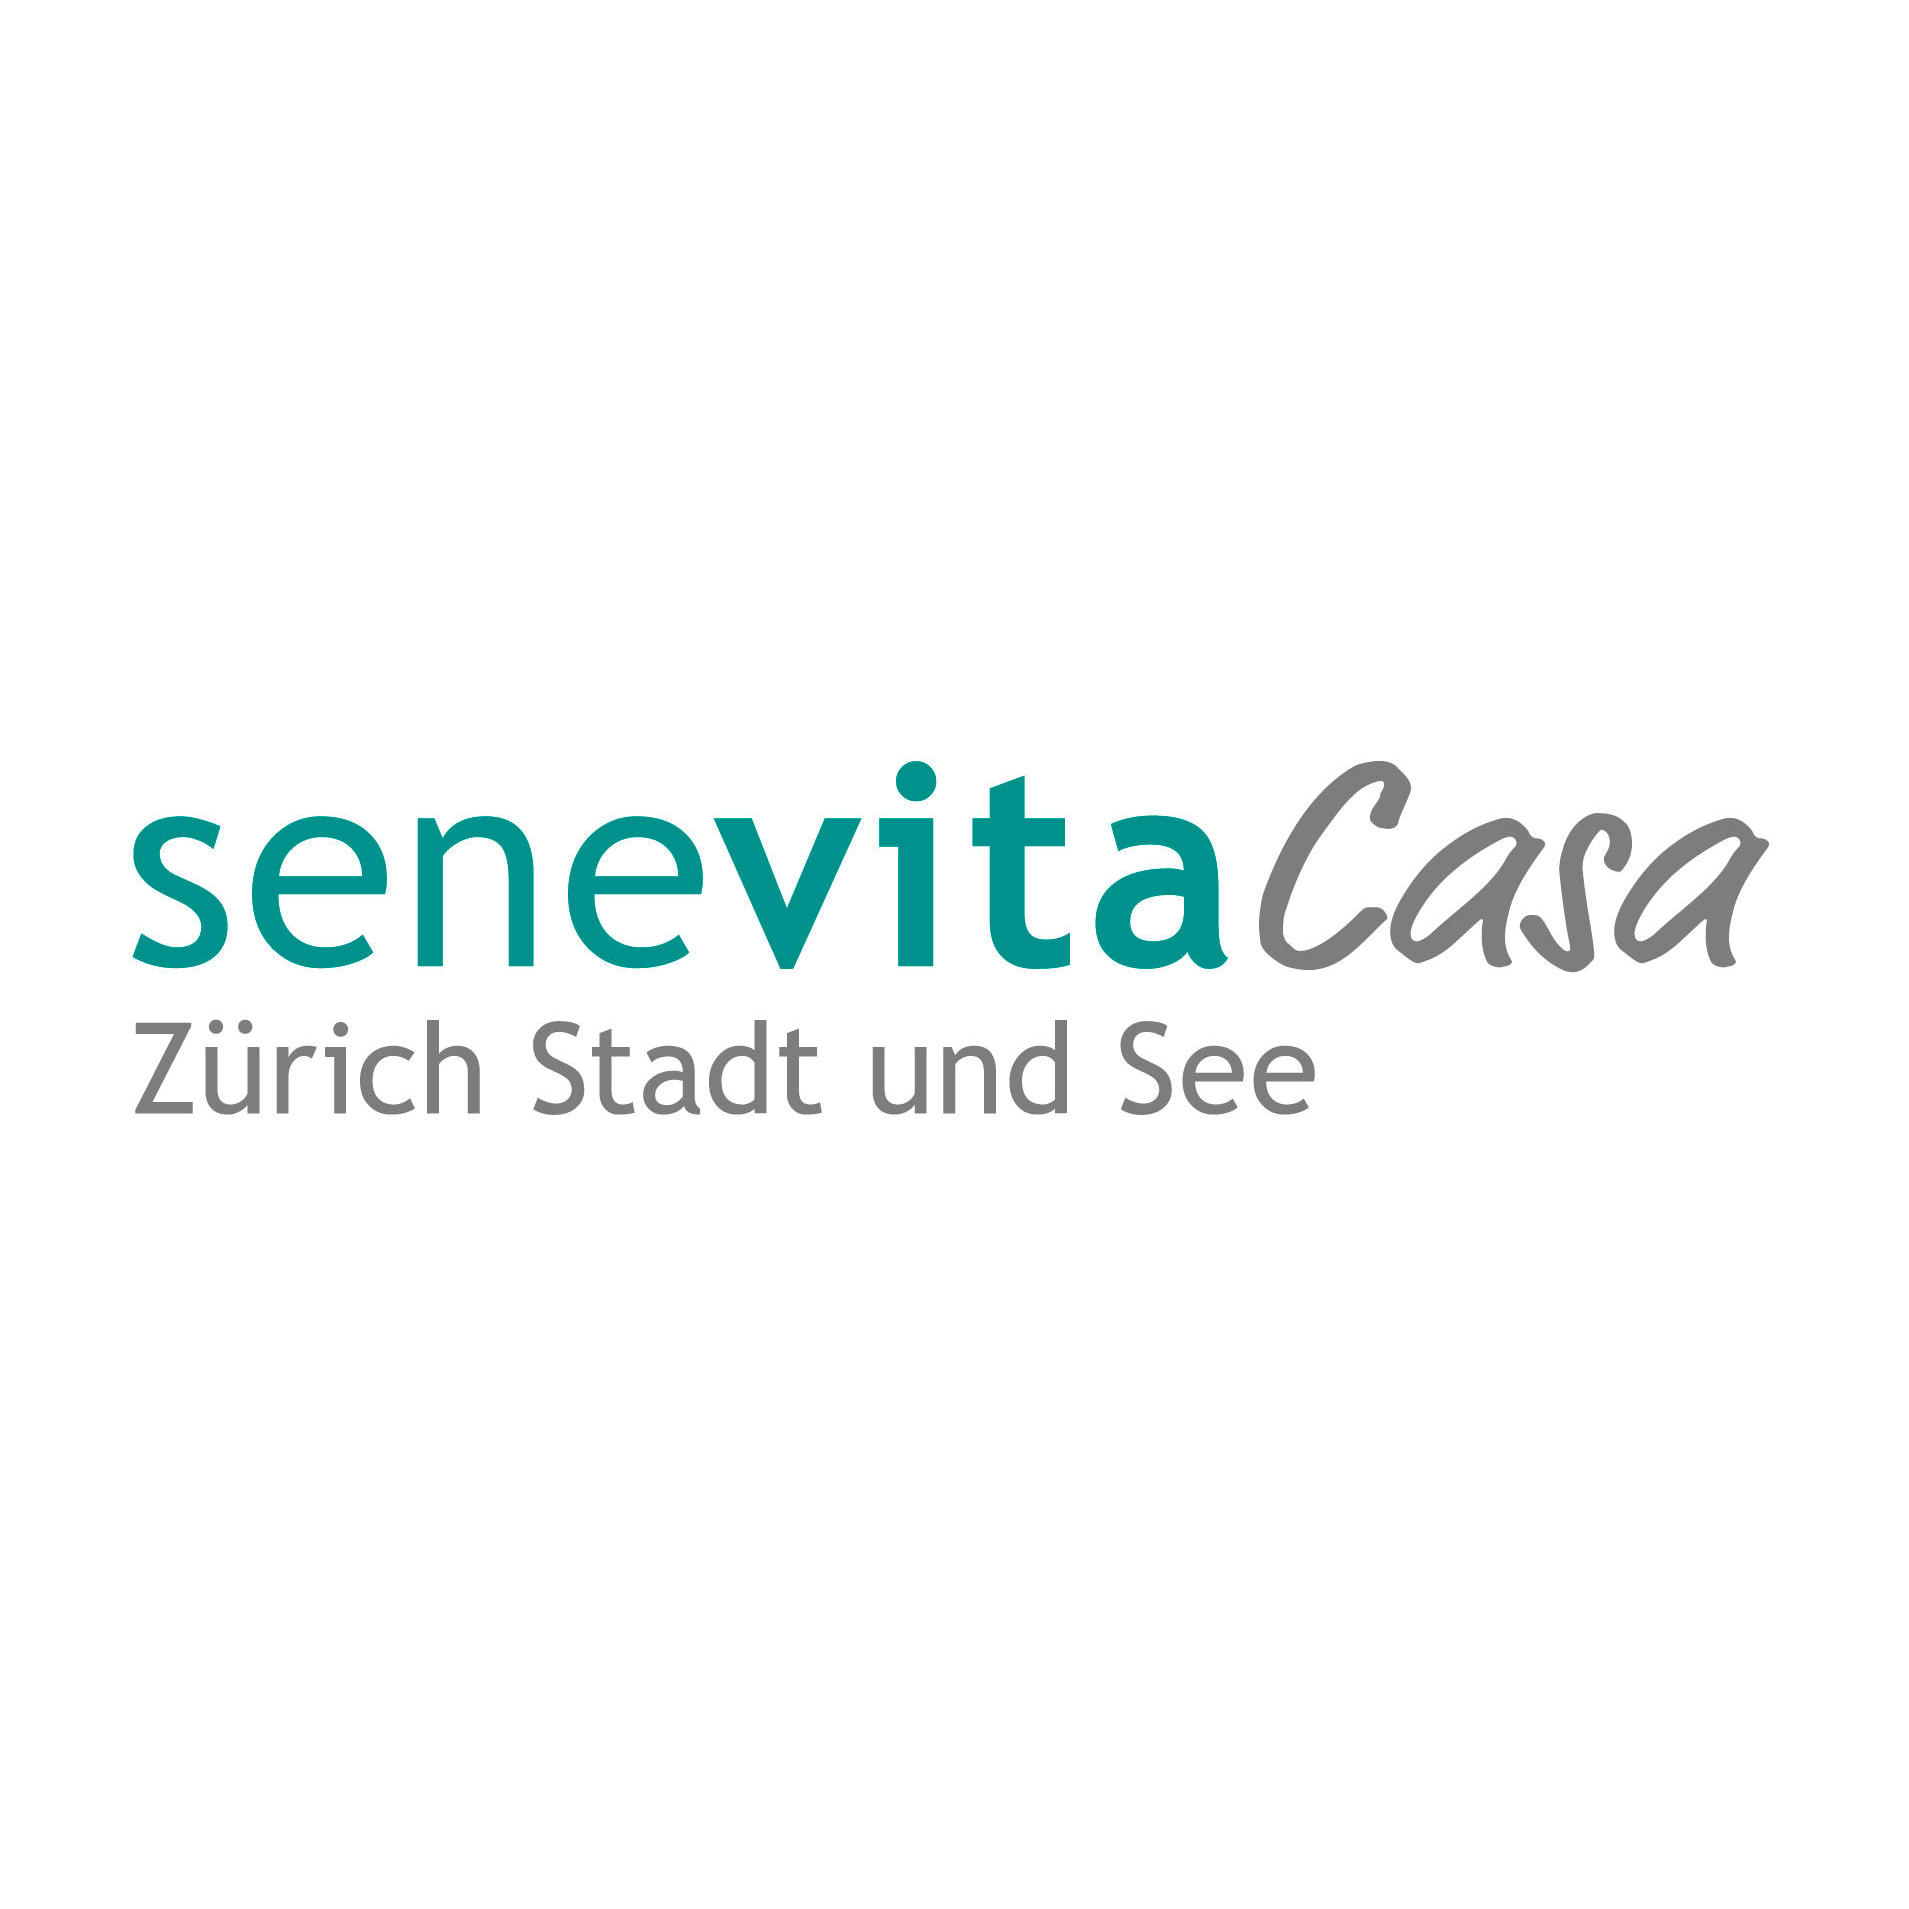 Senevita Casa Zürich Stadt und See Logo